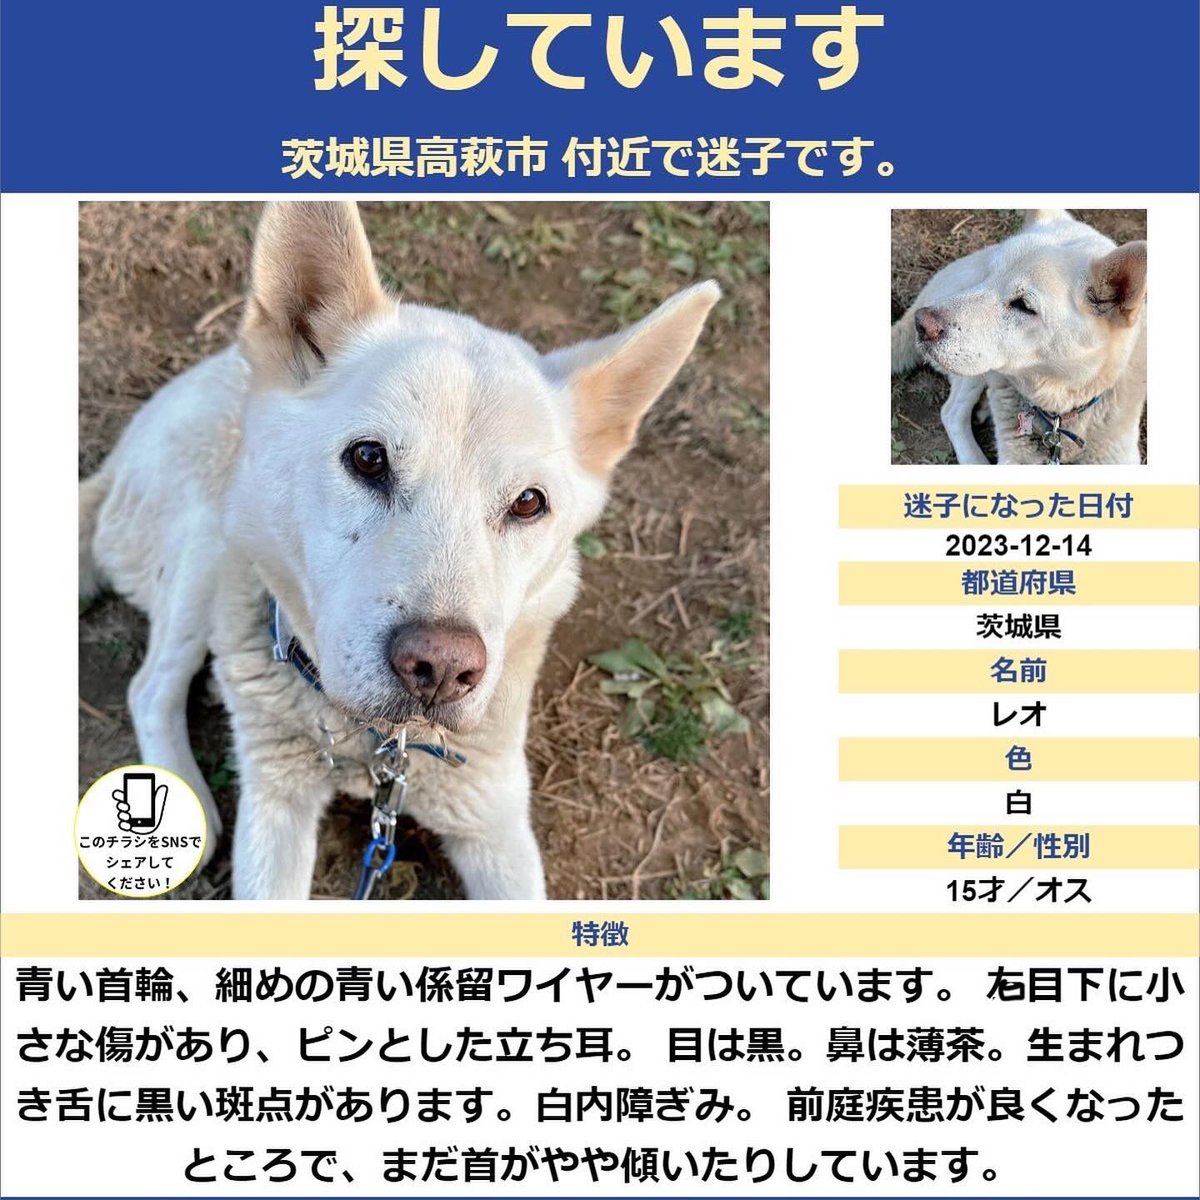 12/14に「茨城県高萩市秋山」自宅よりレオが居なくなってしまってから年が明け、今日はレオの16才の誕生日でした。

とても愛しい大切な子で諦める事ができません。
どうかお力をお貸しください。
白い中型犬を目撃された方はどうか最寄りの警察署かリプ、DMをお願い致します！続きます⬇️